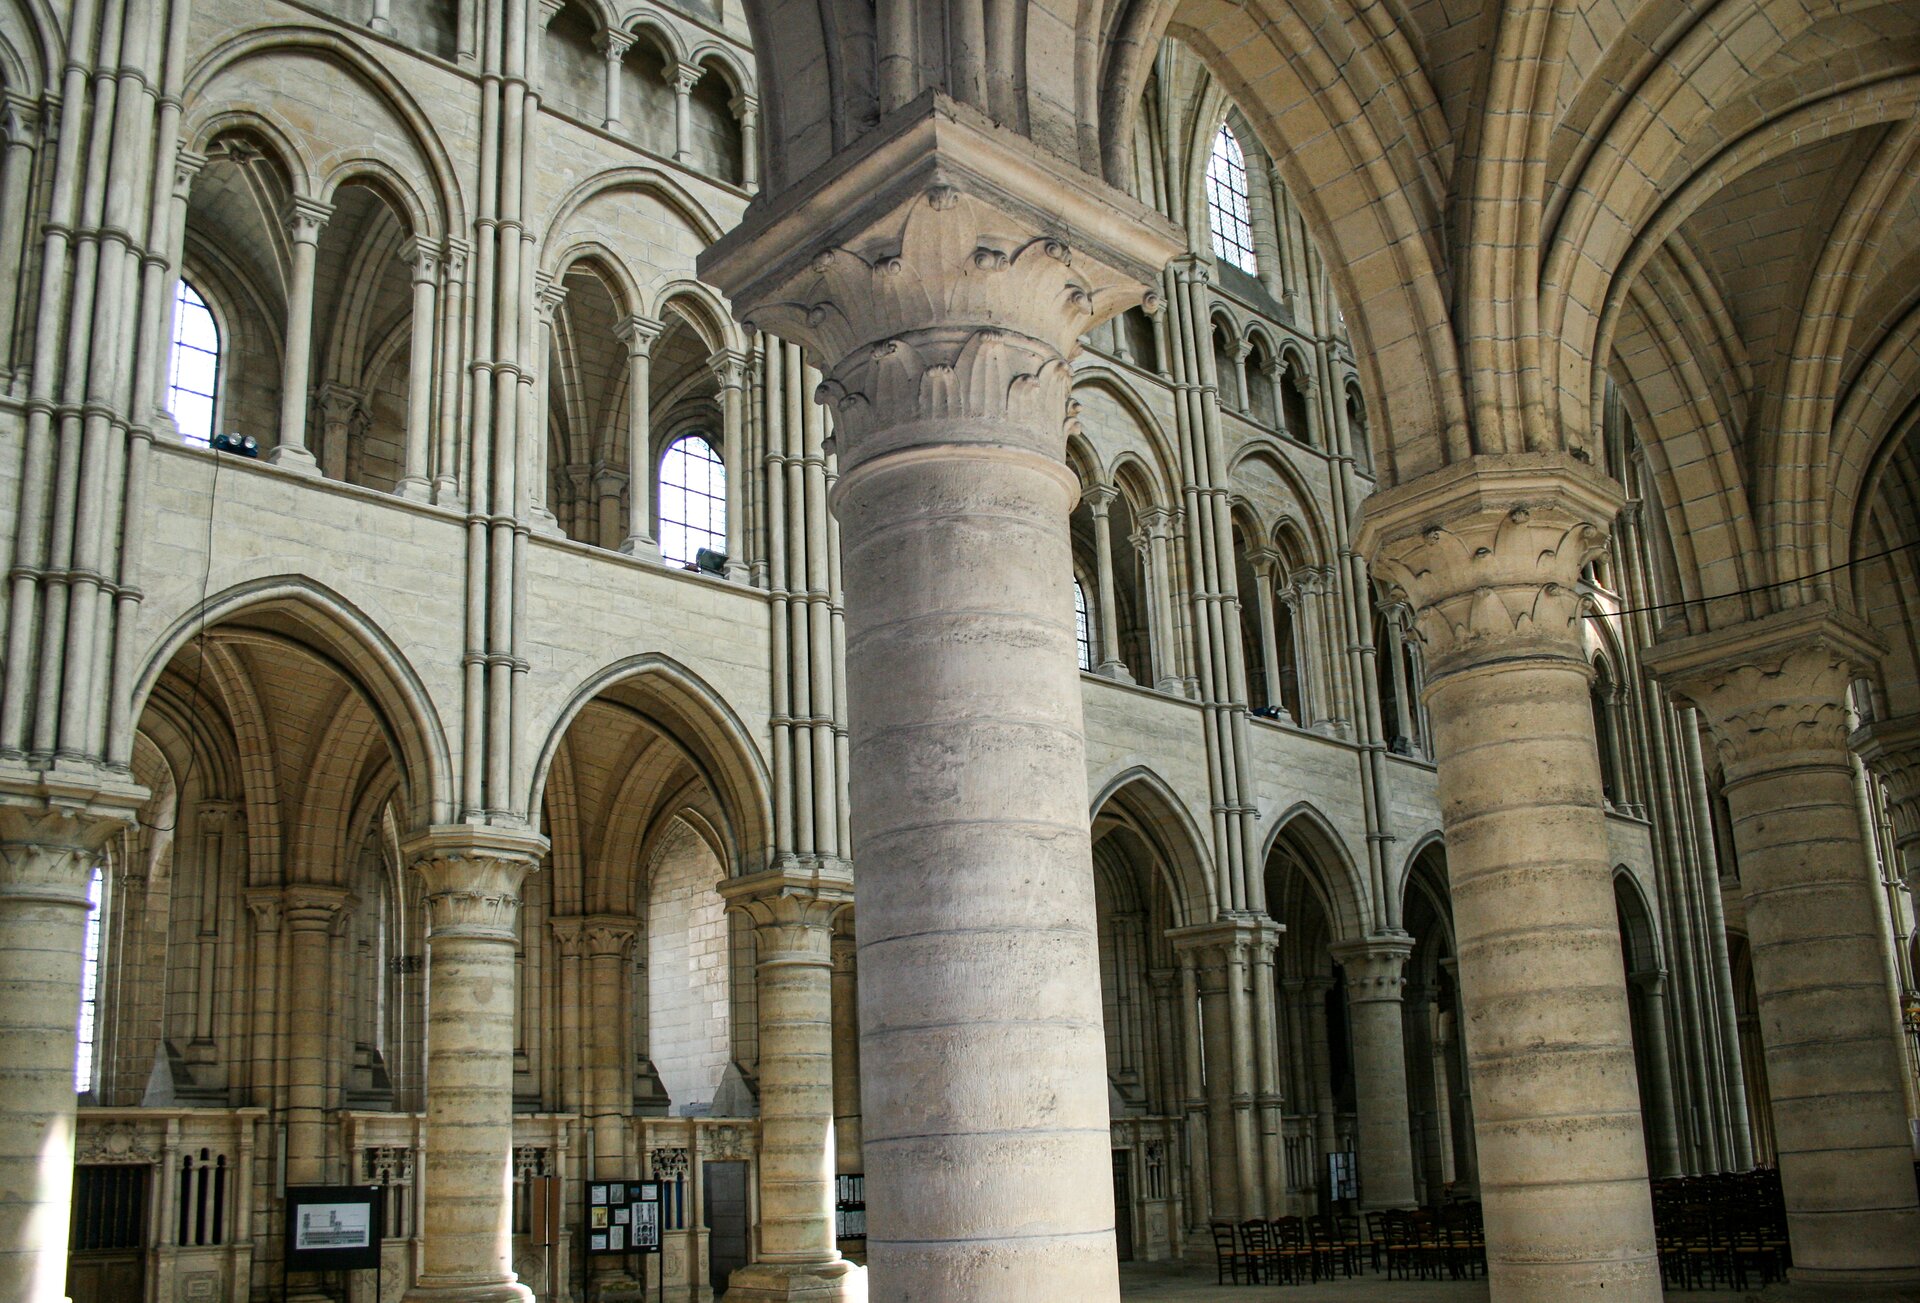 Fotografia przedstawia wnętrze katedry zbudowanej w stylu gotyckim. Ukazana jest główna nawa. Jest to wysokie pomieszczenie wsparte na licznych kolumnach zwieńczonych płaskorzeźbami z liśćmi akantu. Uwagę zwracają łuki różnych rozmiarów.